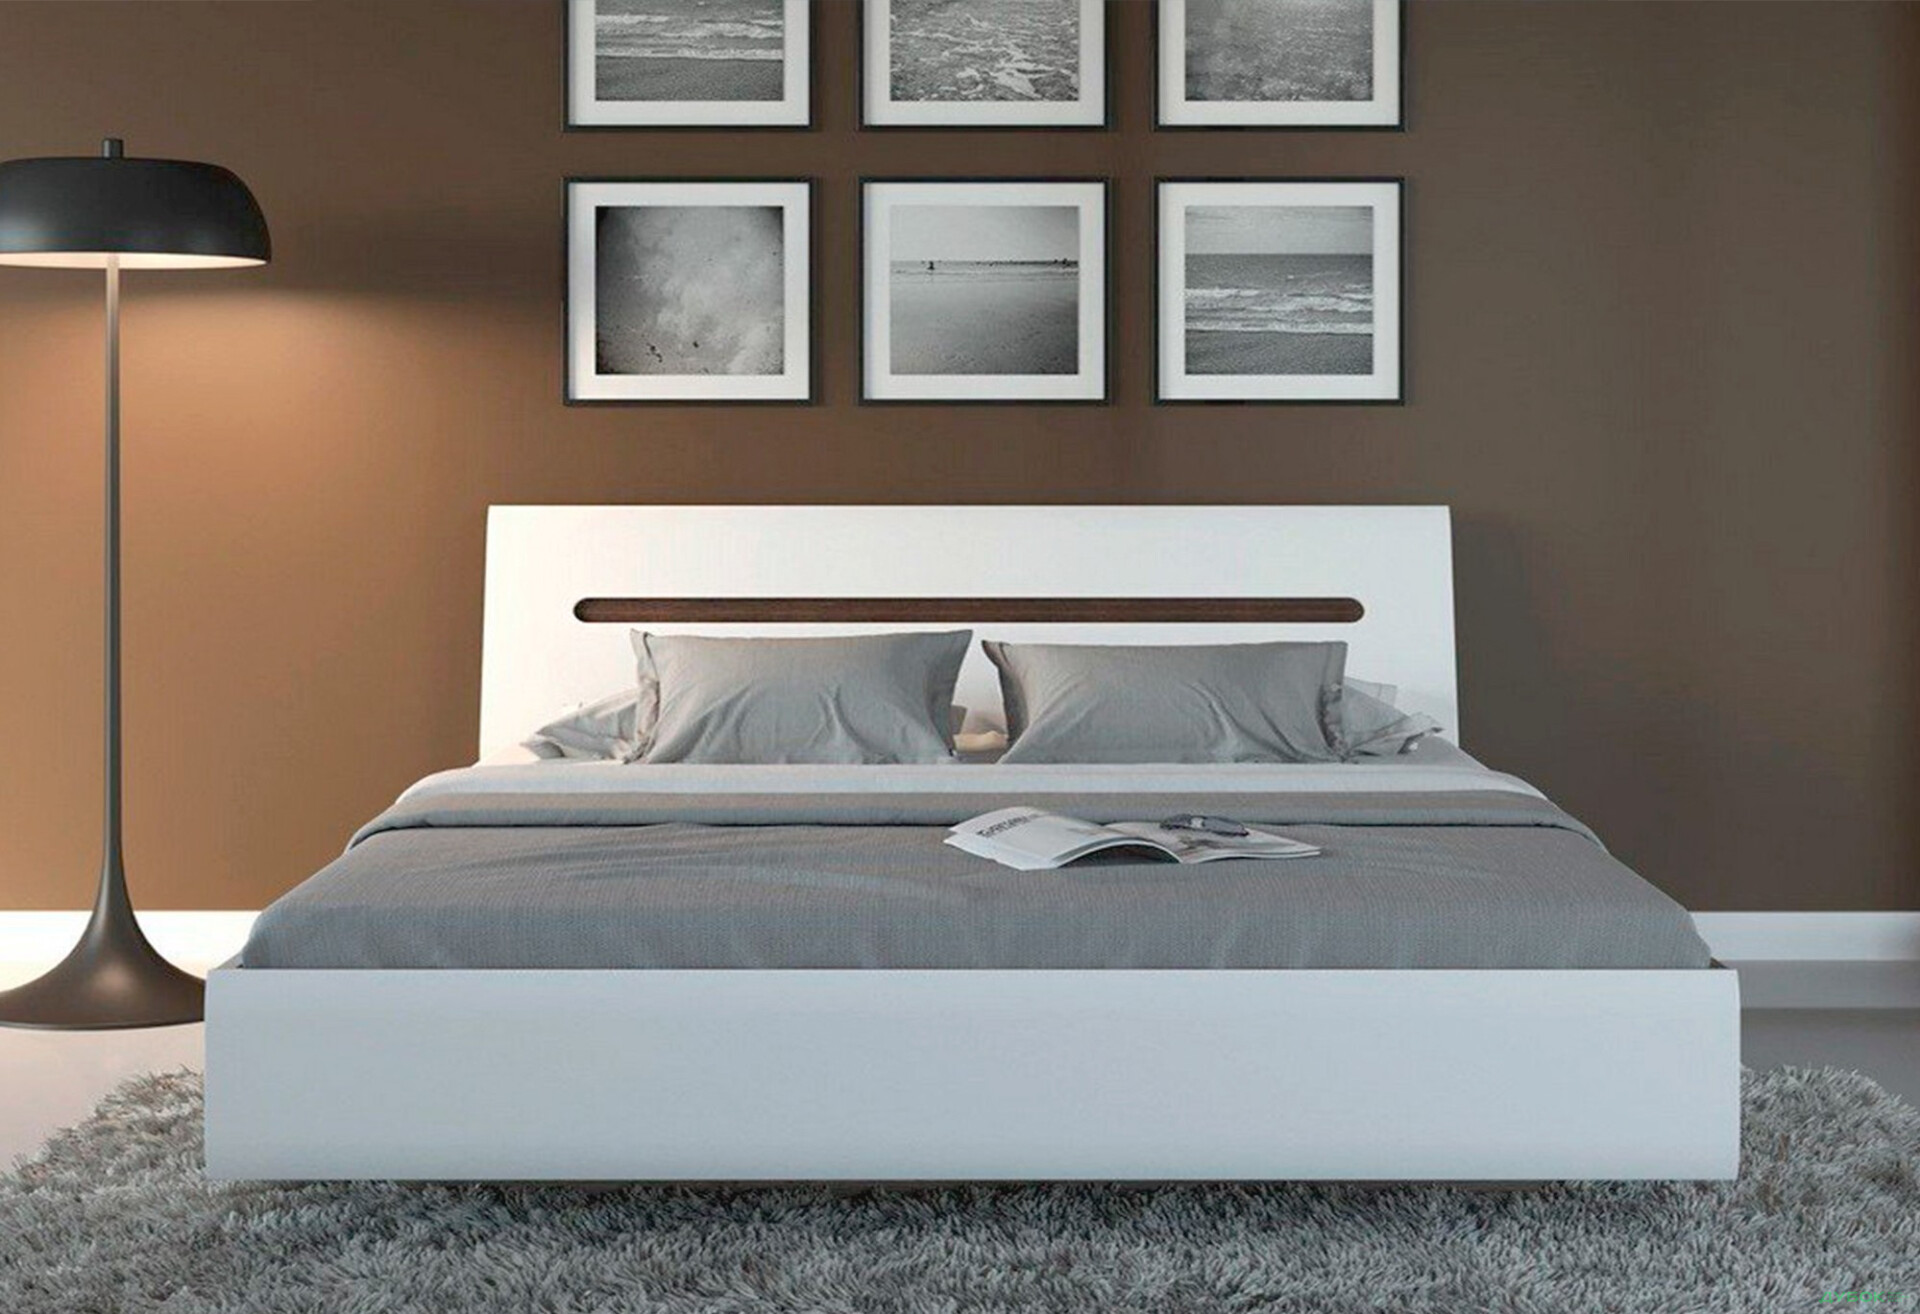 Фото 5 - Кровать ВМК Ацтека 160х200 см подъемное, белая